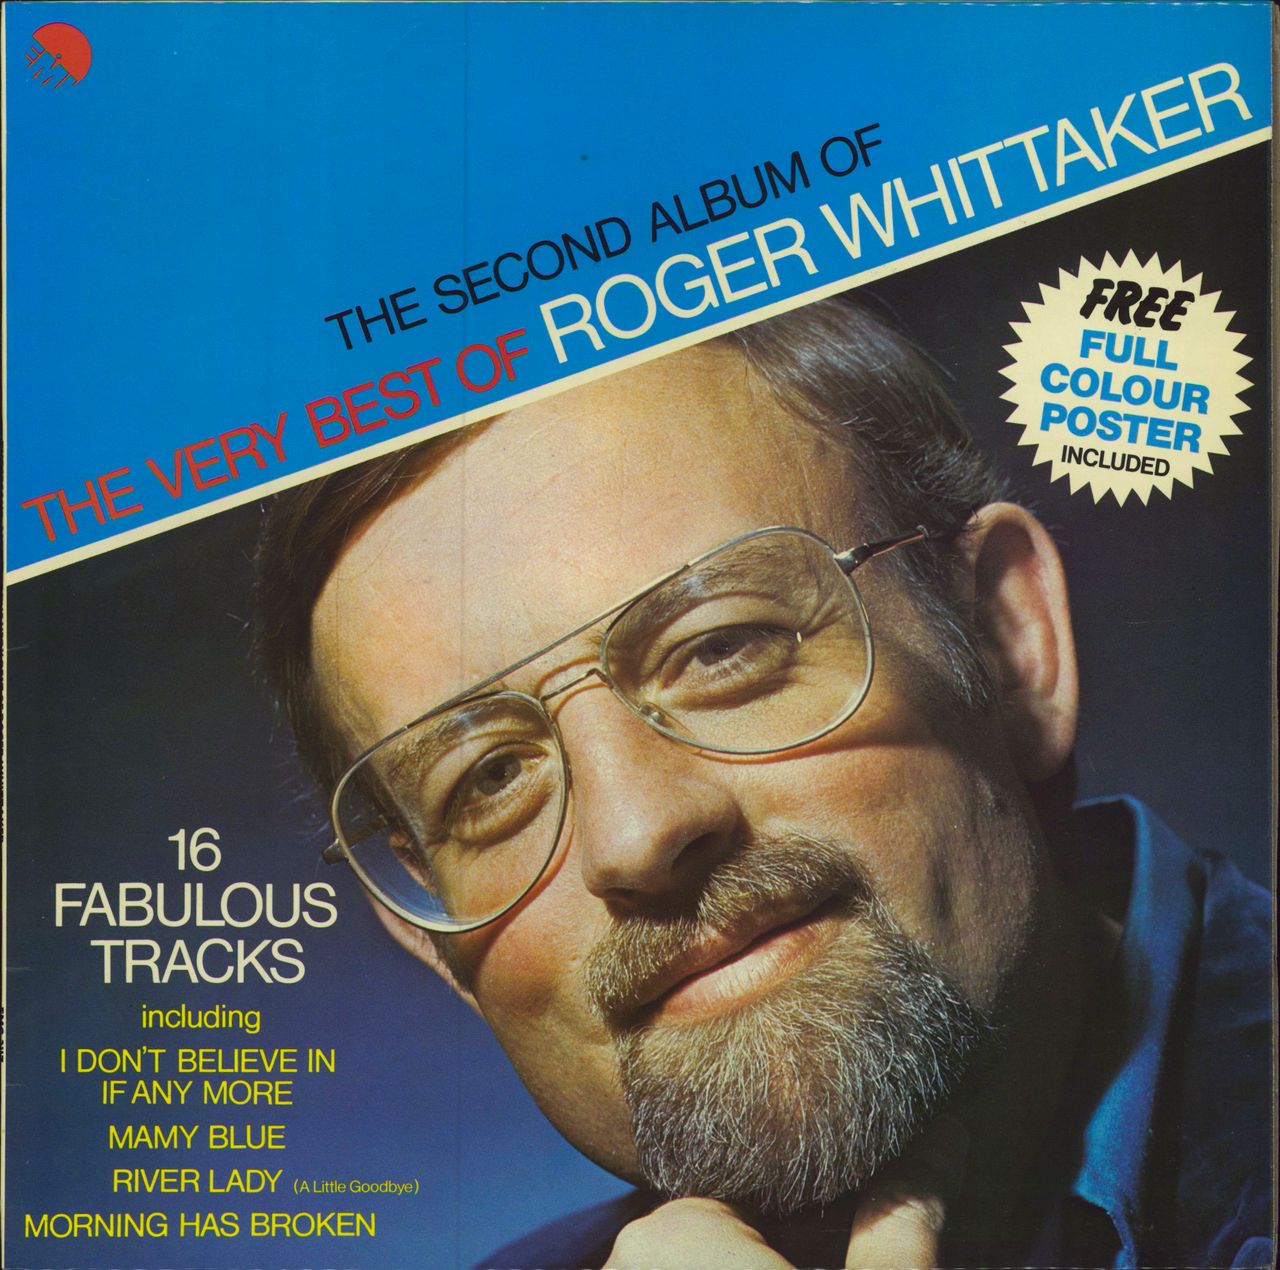 Roger Whittaker The Second Album Of The Very Best Of Roger Whittaker + Poster UK vinyl LP album (LP record) EMC3117